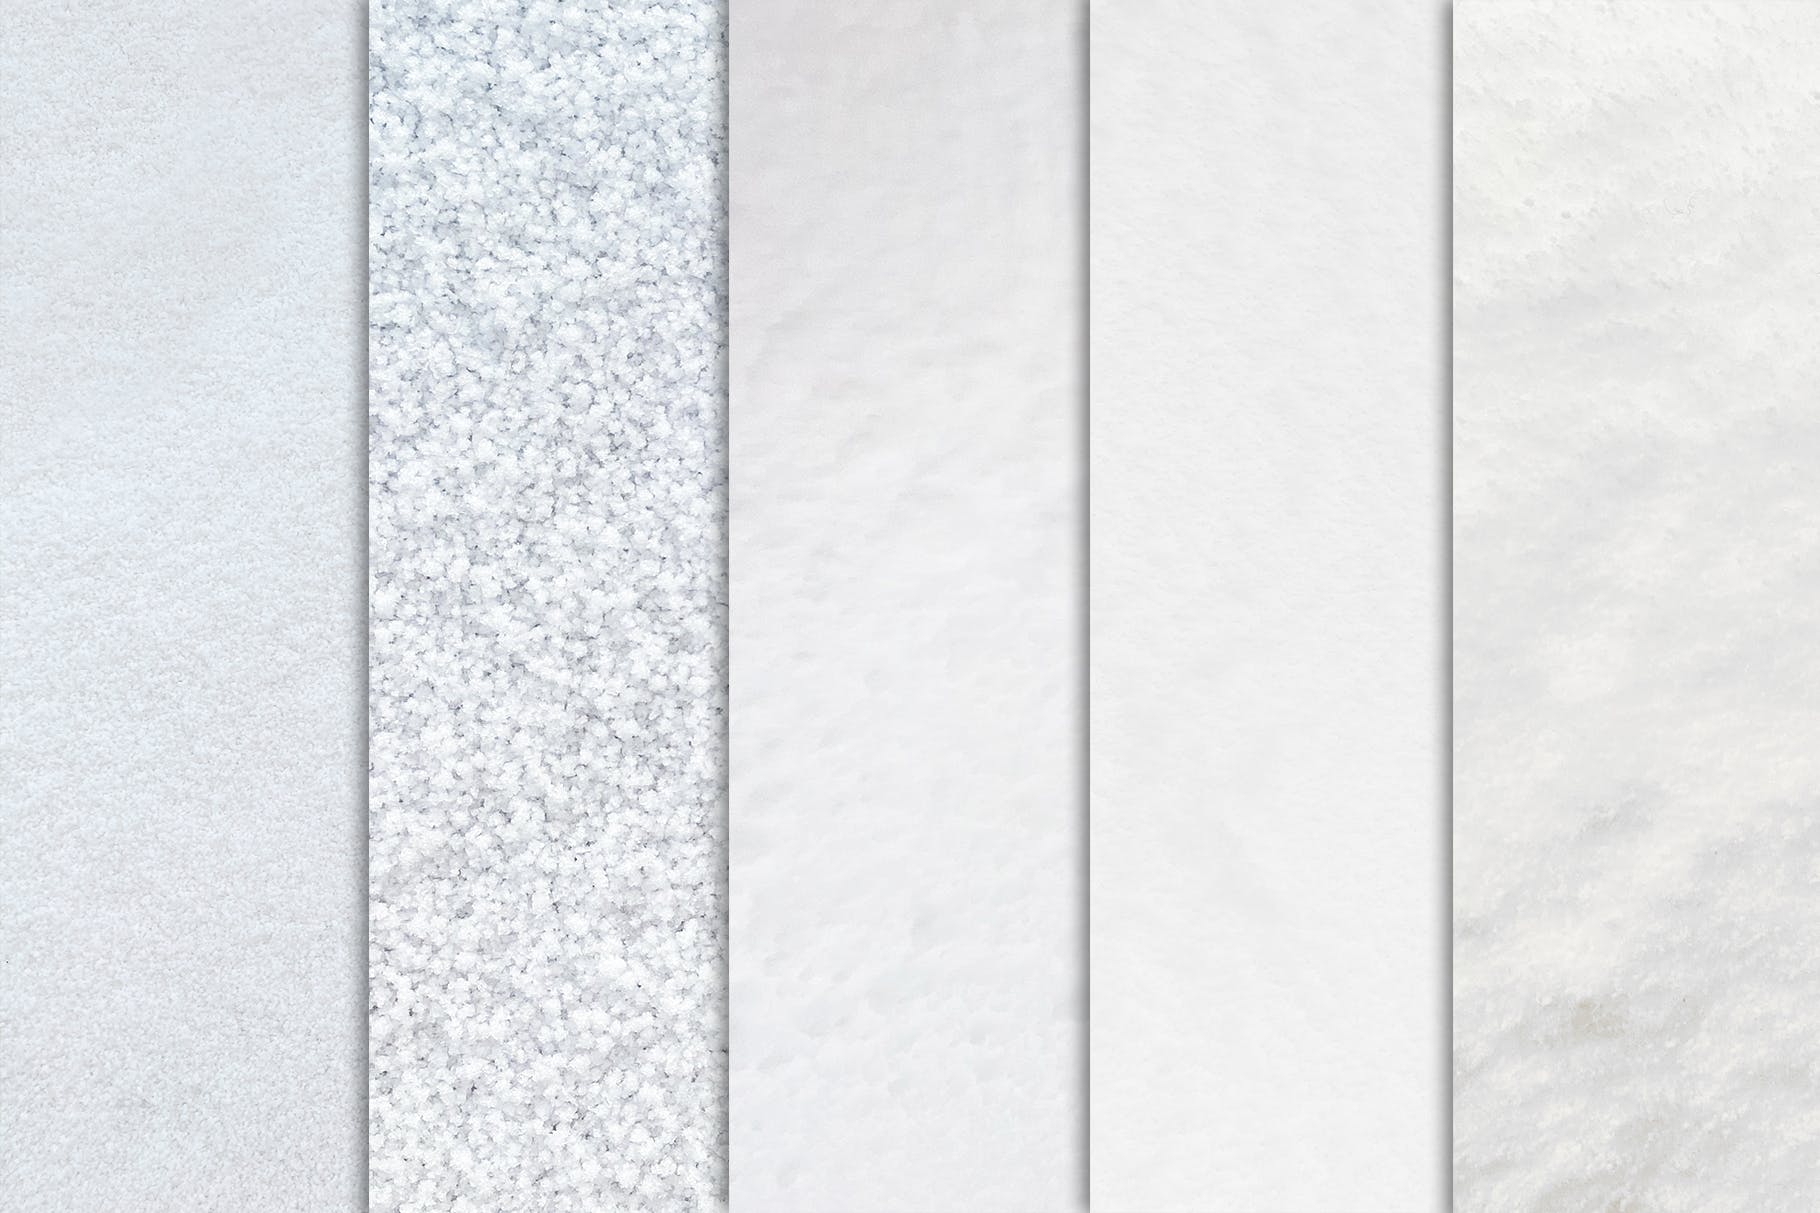 10个冬季白雪纹理素材 Snow Textures x10 图片素材 第2张